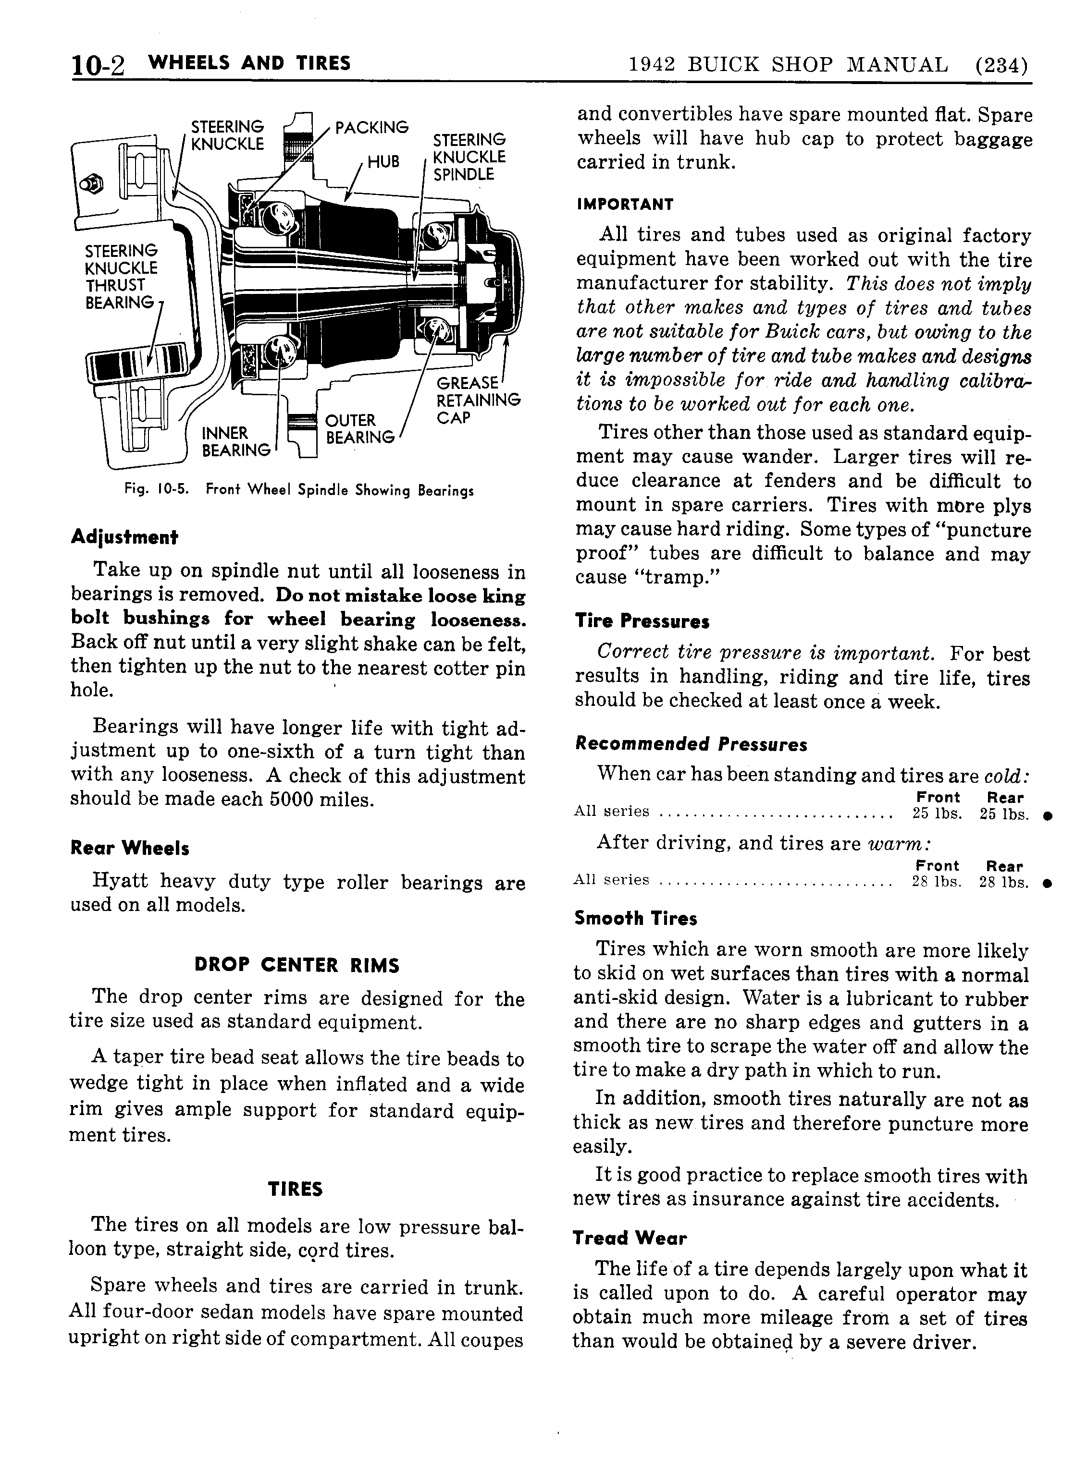 n_11 1942 Buick Shop Manual - Wheels & Tires-002-002.jpg